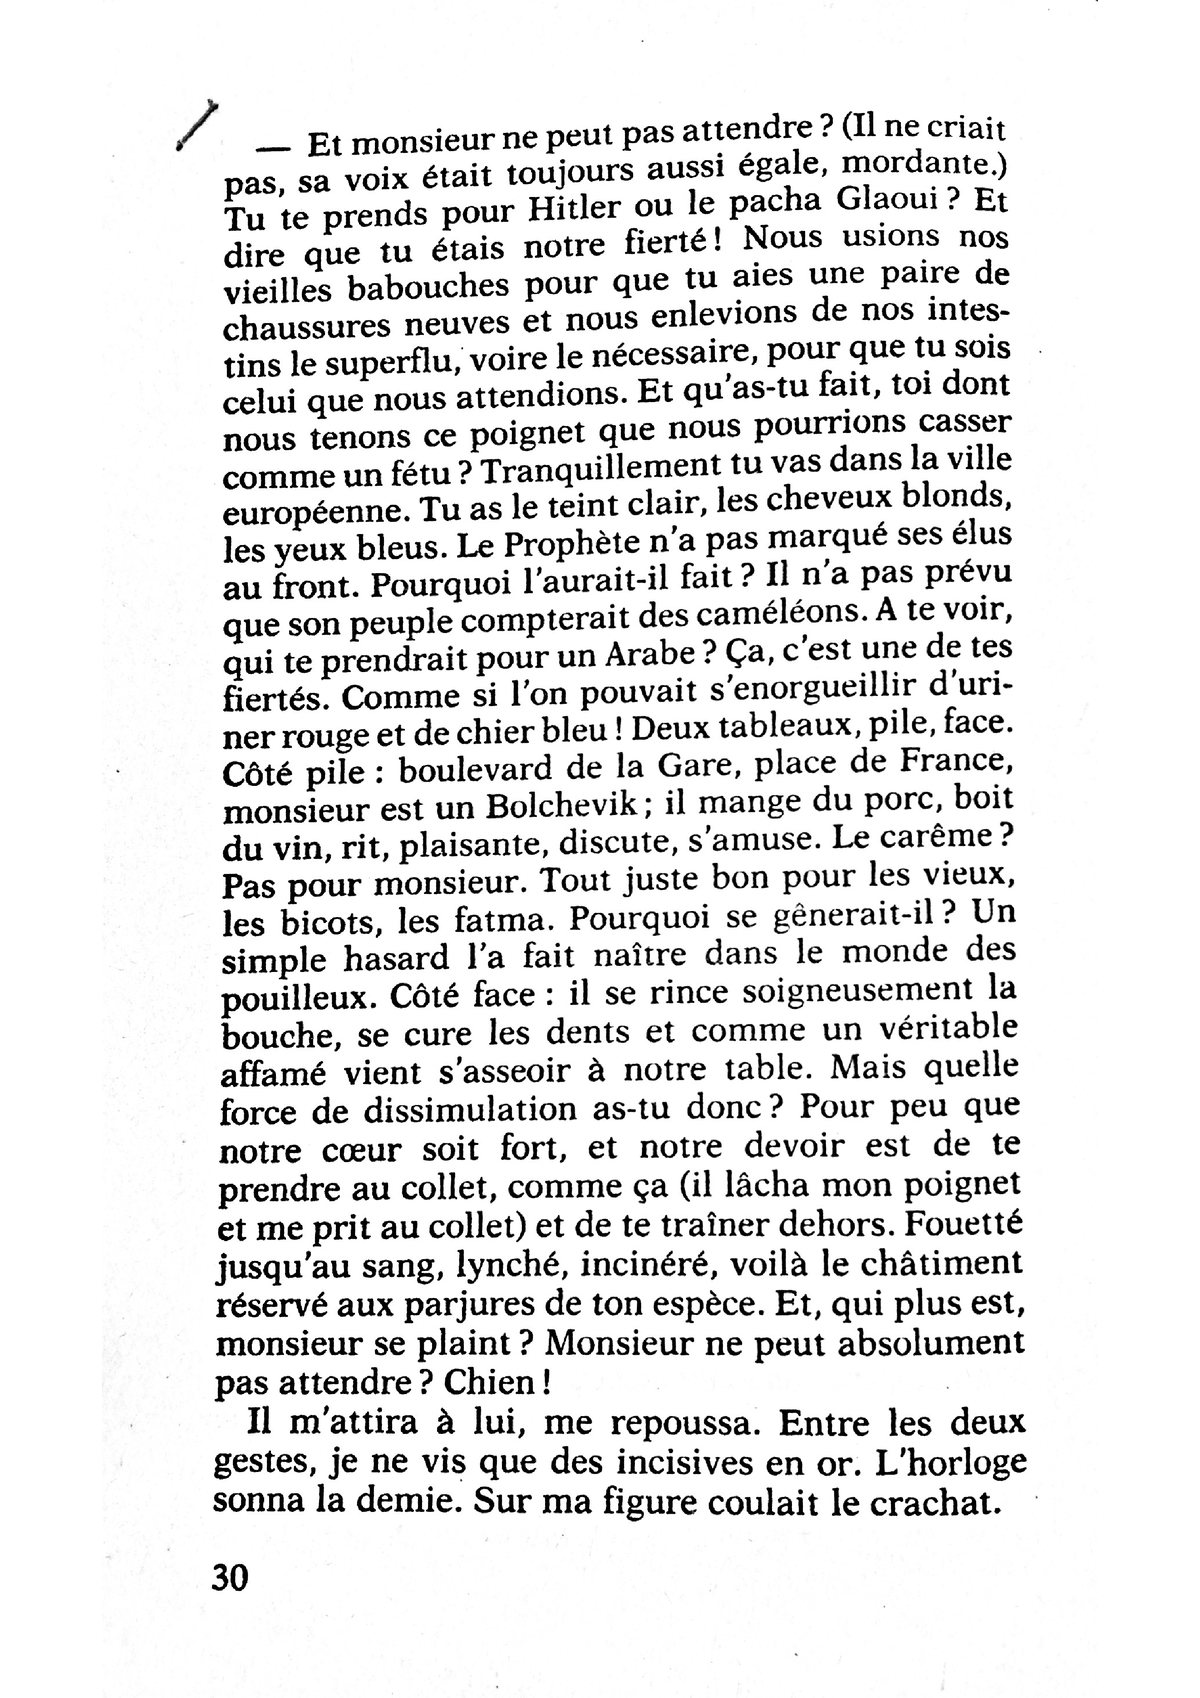 Chraibi Le passé simple - M2 Littérature francophone - Studocu